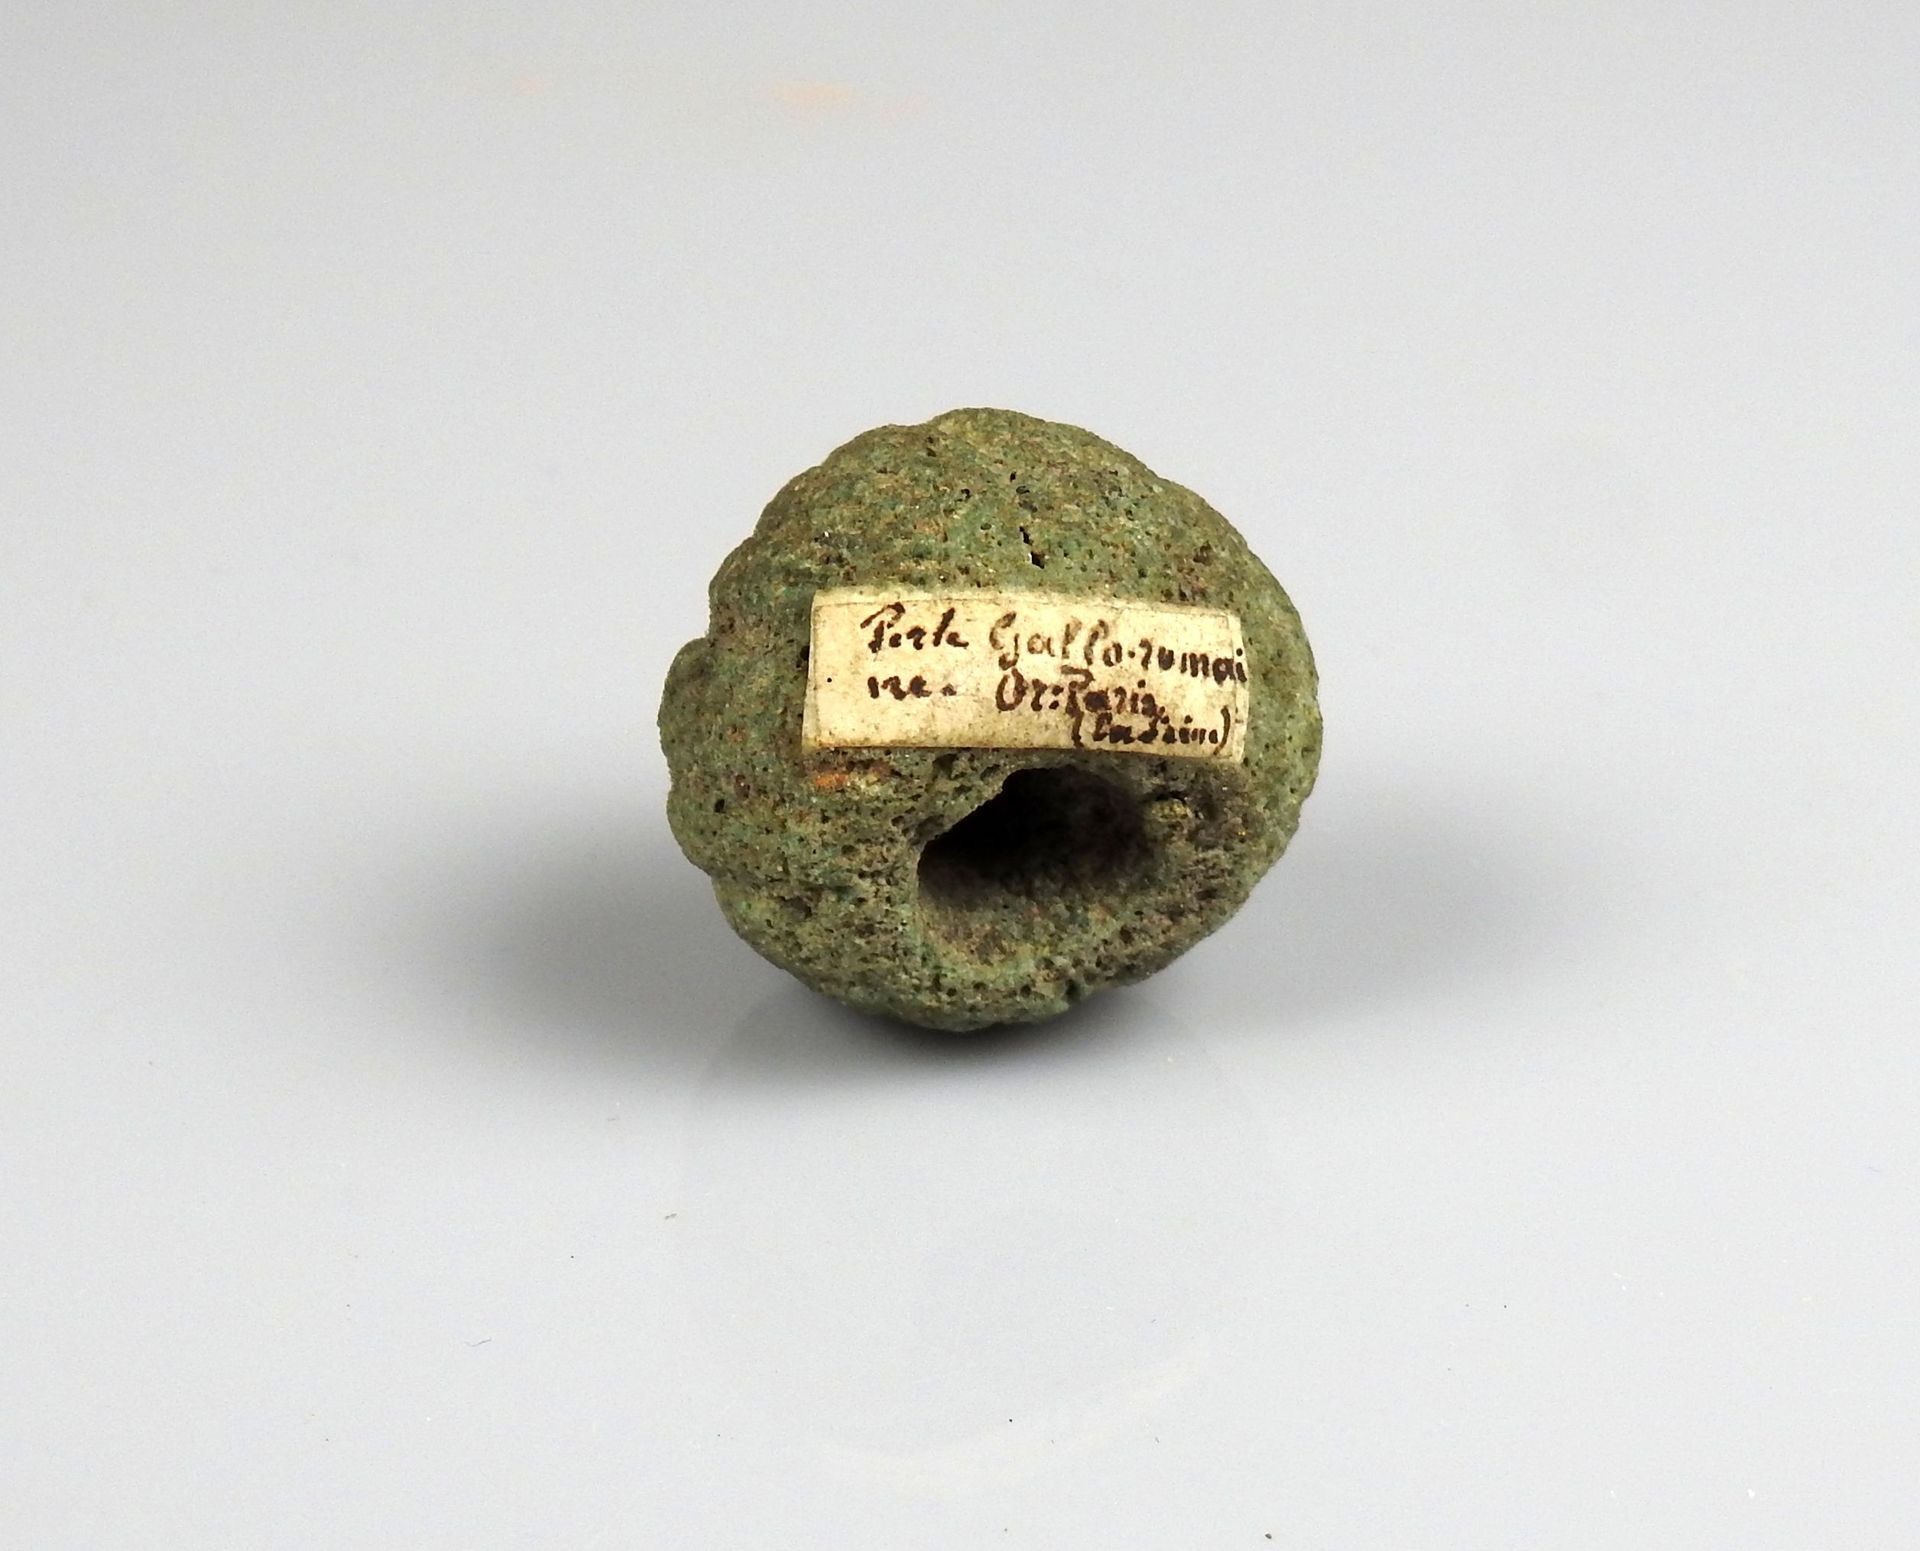 Null 带有 "Gallo-Roman珍珠 "字样的Gallic珍珠...巴黎"。

前19世纪某省著名人士的收藏

陶器2.7厘米

高卢雄鸡时期